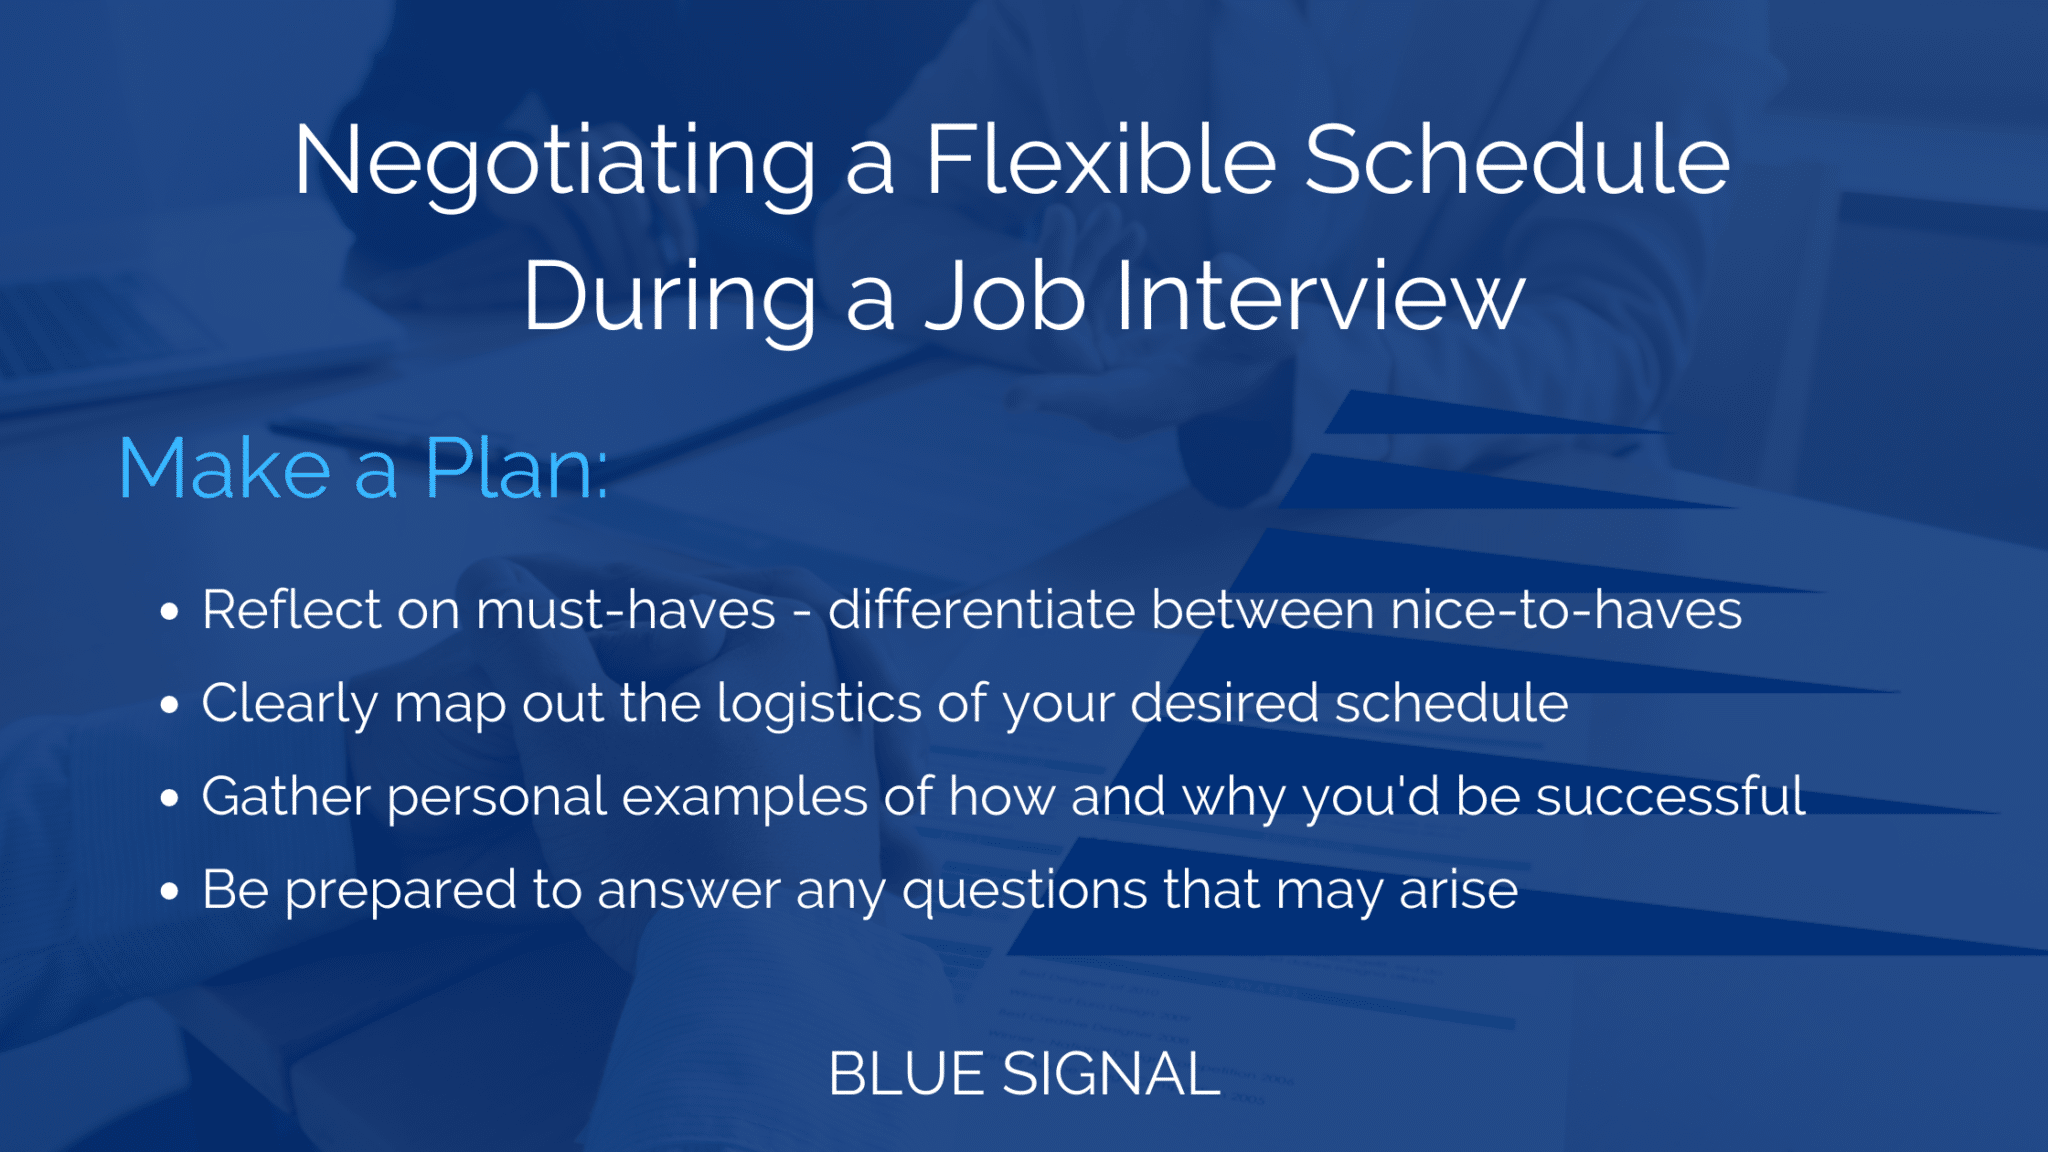 Negotiate a Flexible Schedule - Make A Plan